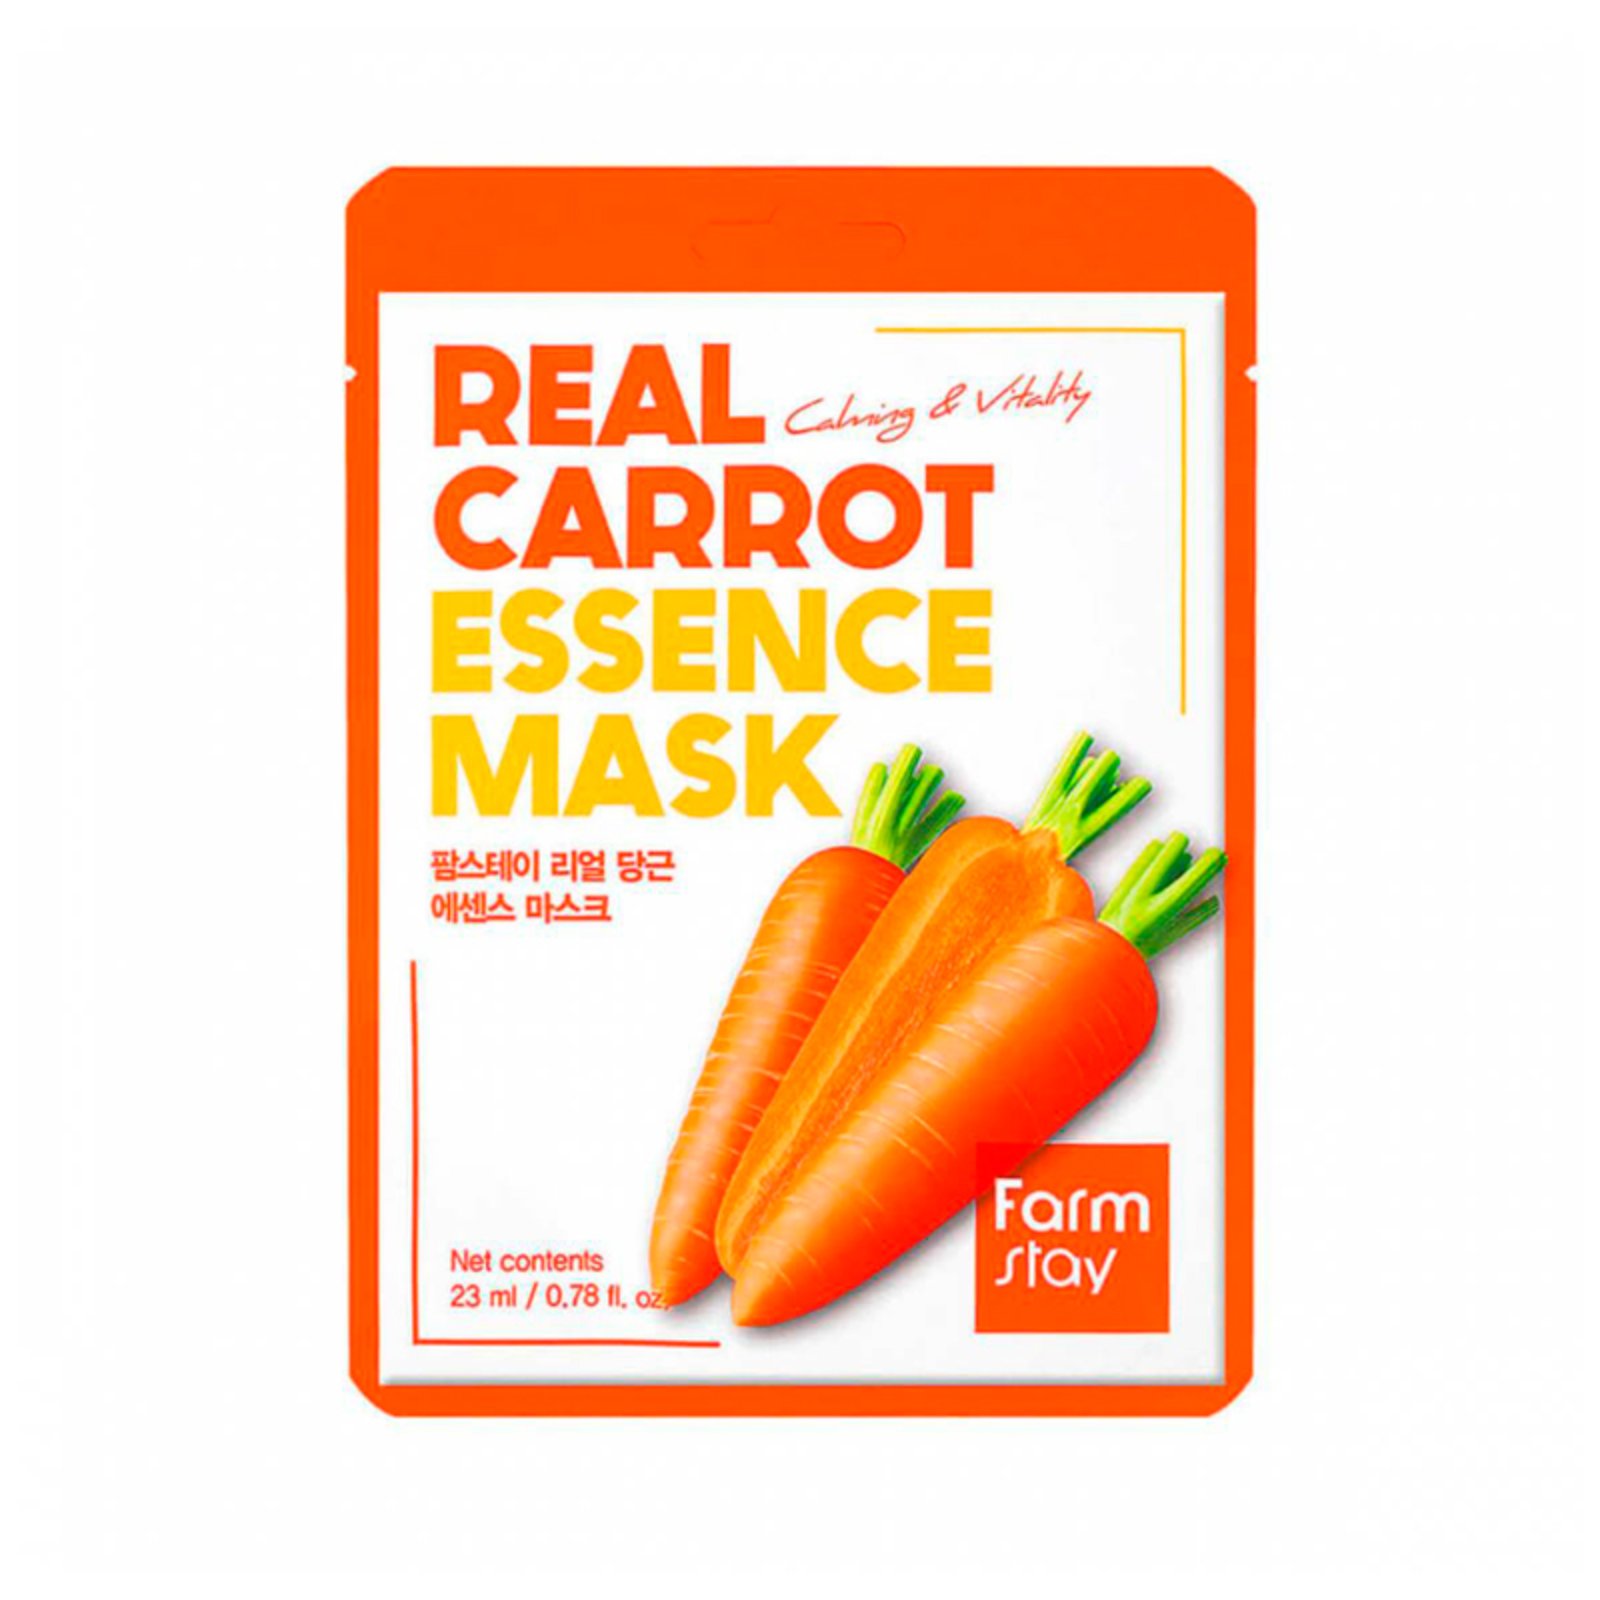 Маска для лица FarmStay успокаивающая, с экстрактом моркови, тканевая, 23 мл набор для лица sadoer крем с маслом моркови пенная маска тканевая маска 5 шт сыворотка